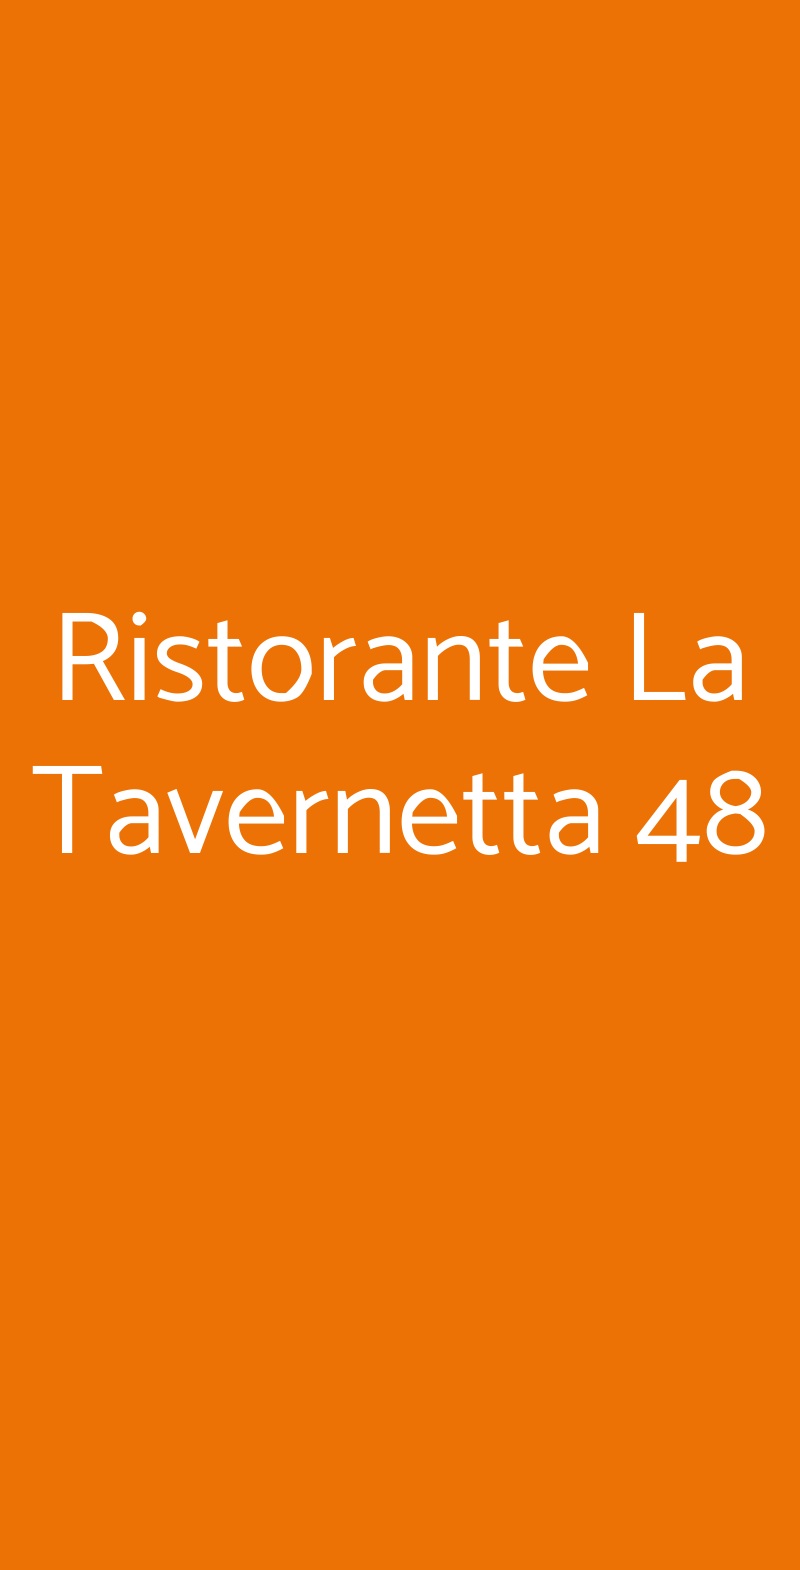 Ristorante La Tavernetta 48 Roma menù 1 pagina